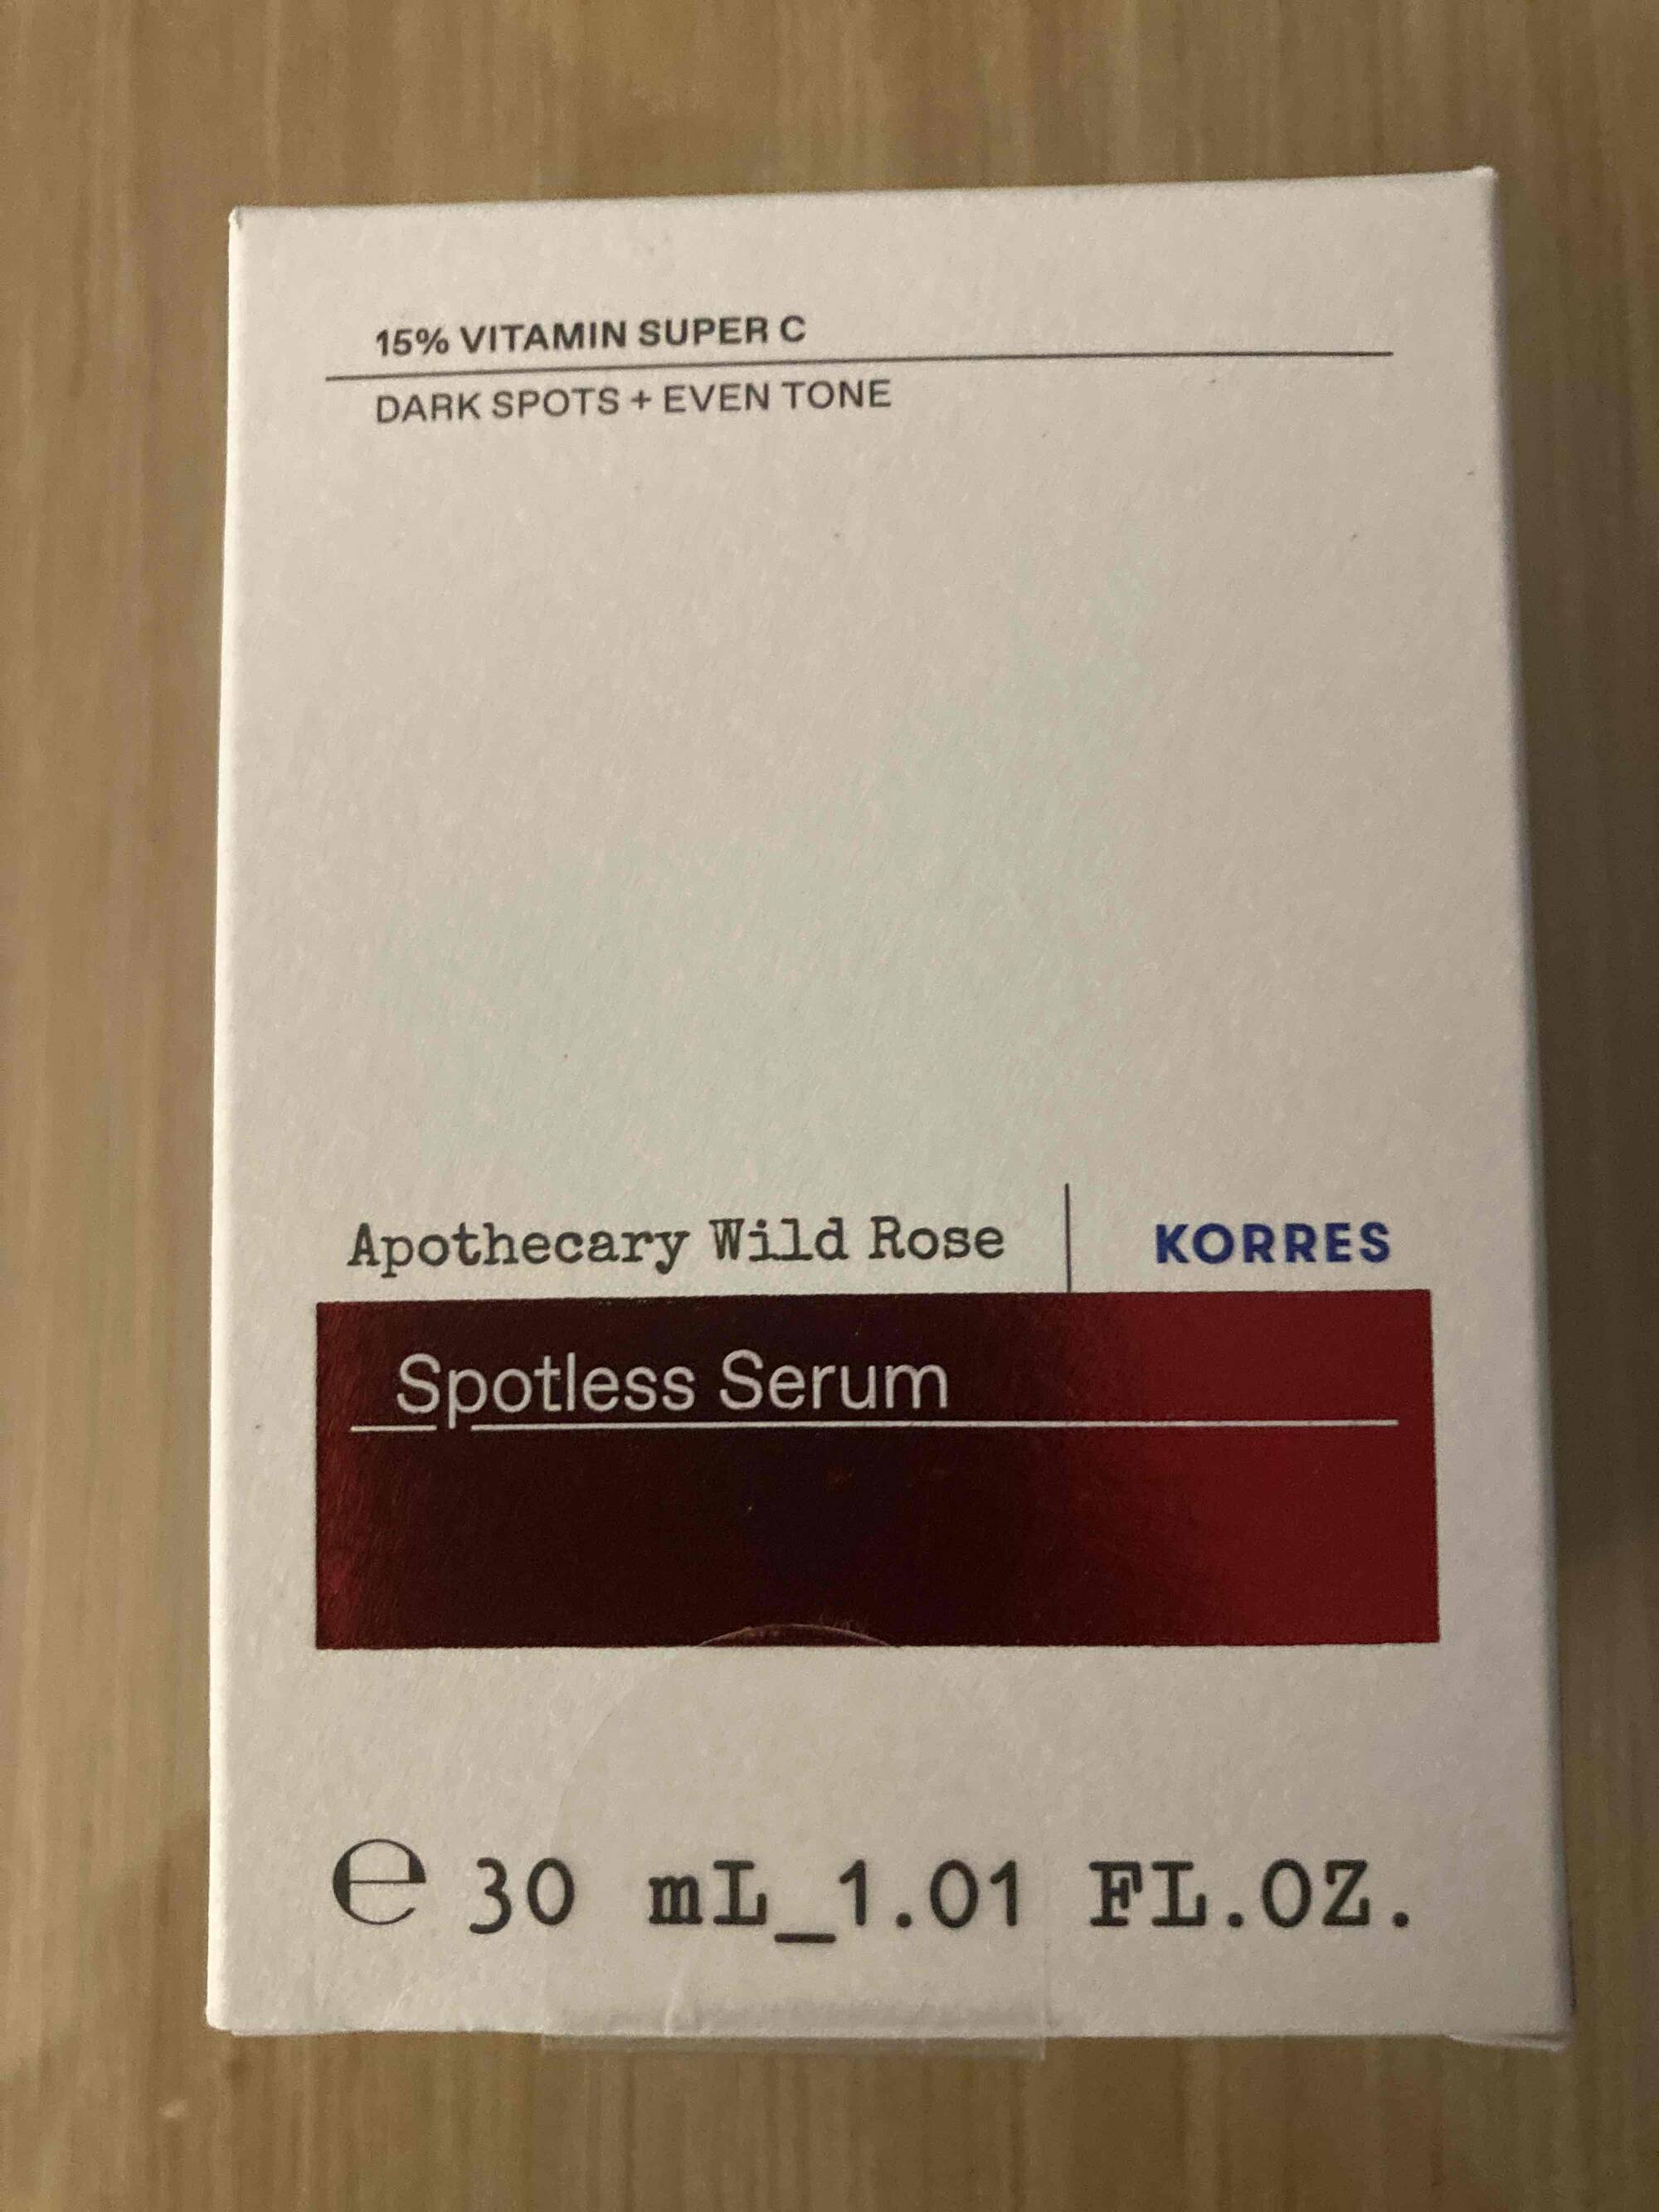 KORRES - Spotless Serum 